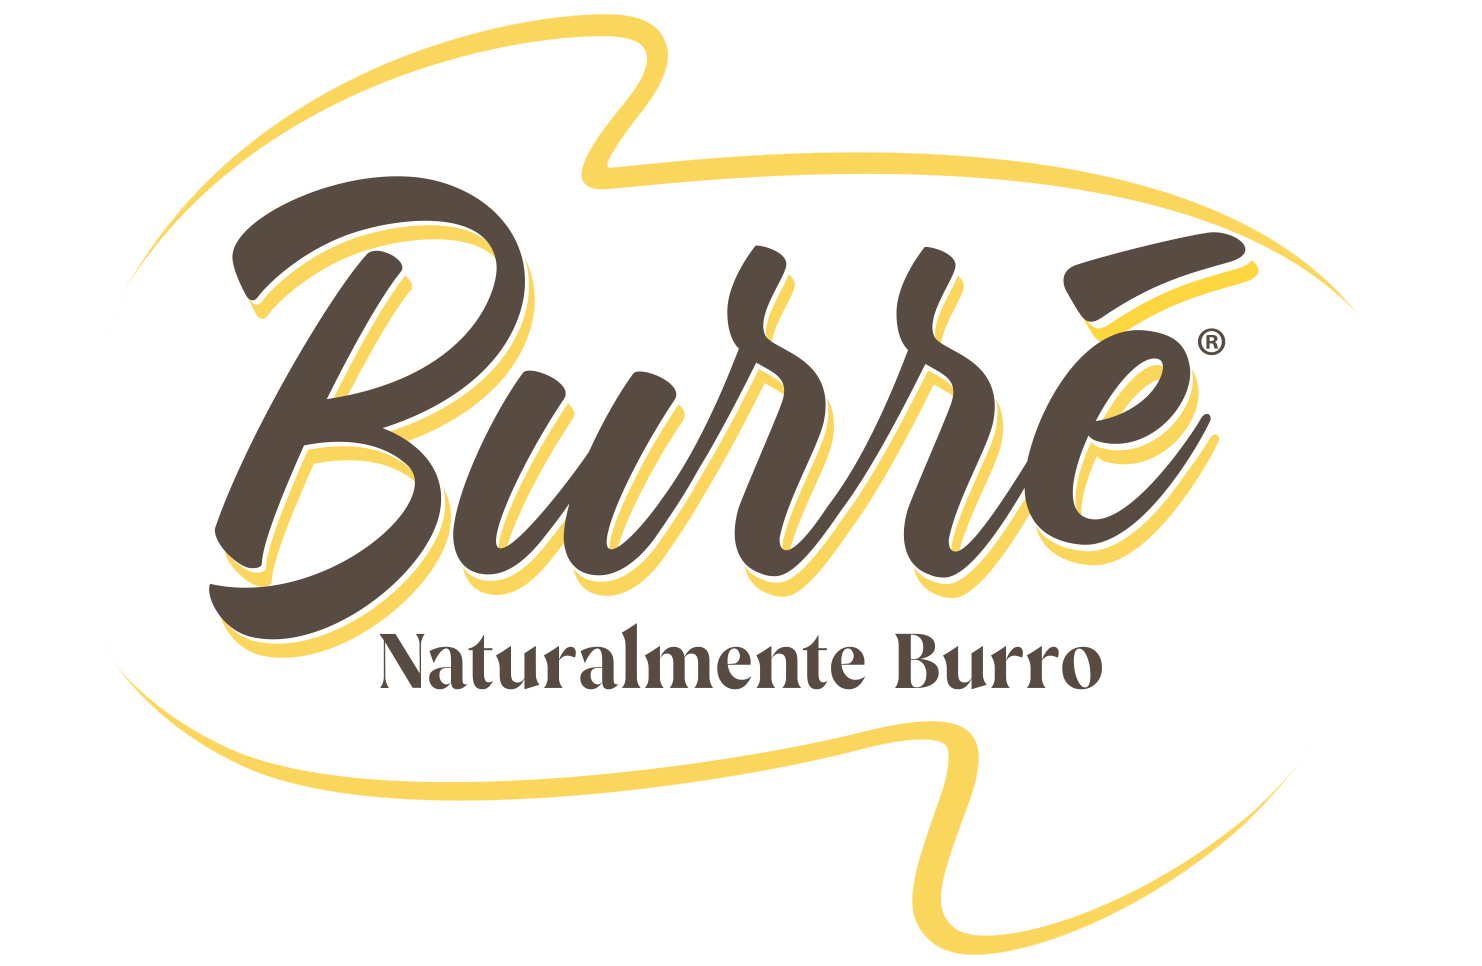 BURRÈ / NATURALMENTE BURRO